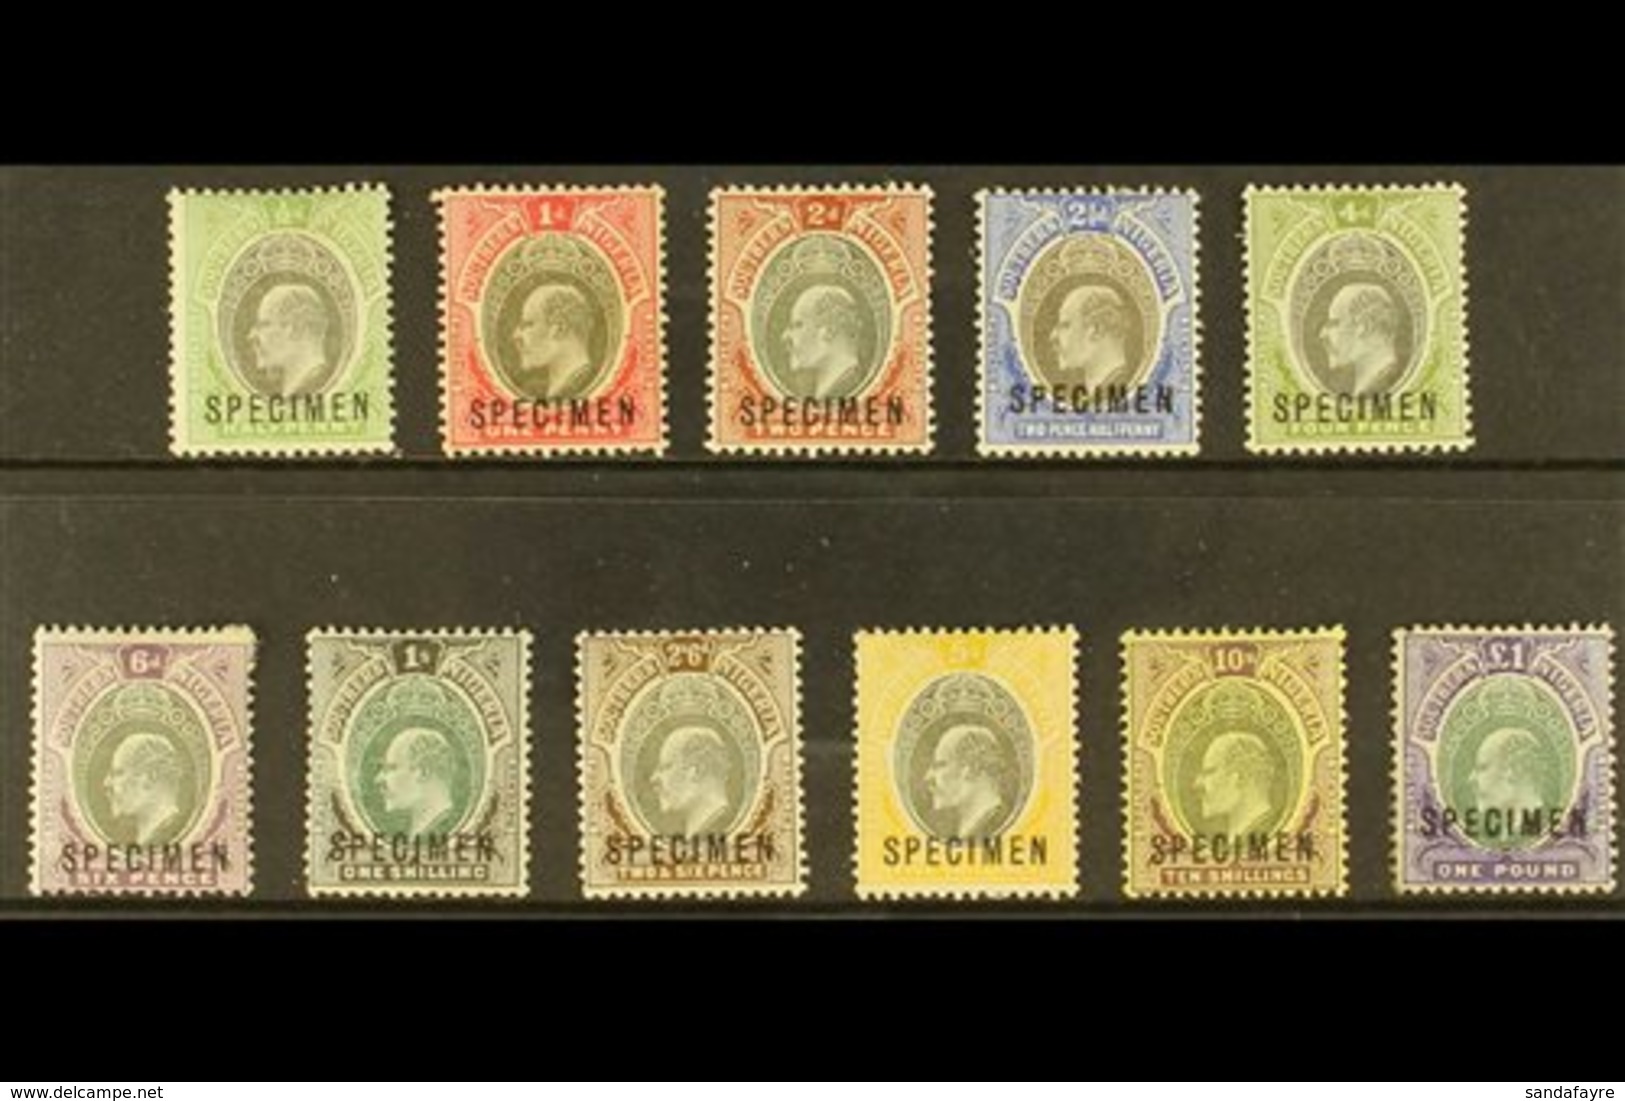 \Y 1903-04\Y KEVII Definitive "SPECIMEN" Overprinted complete Set, SG 10s/20s, Fine Mint (11 Stamps) For More Images, Pl - Nigeria (...-1960)